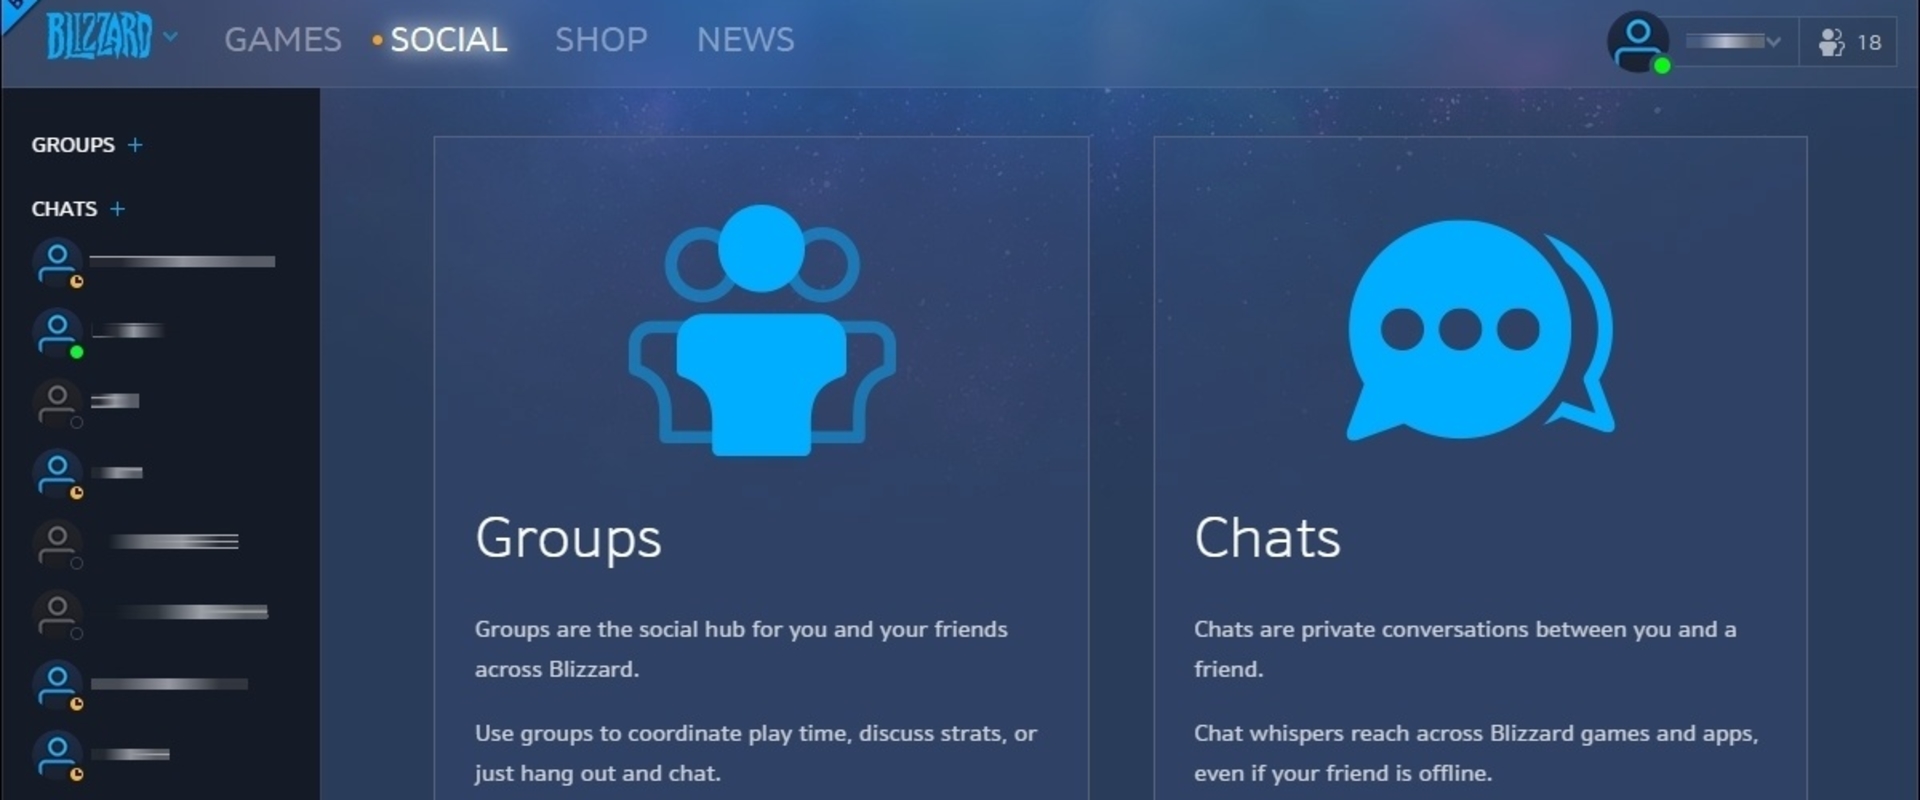 Megújul a Blizzard asztali kliens -végre jön a Social Tab